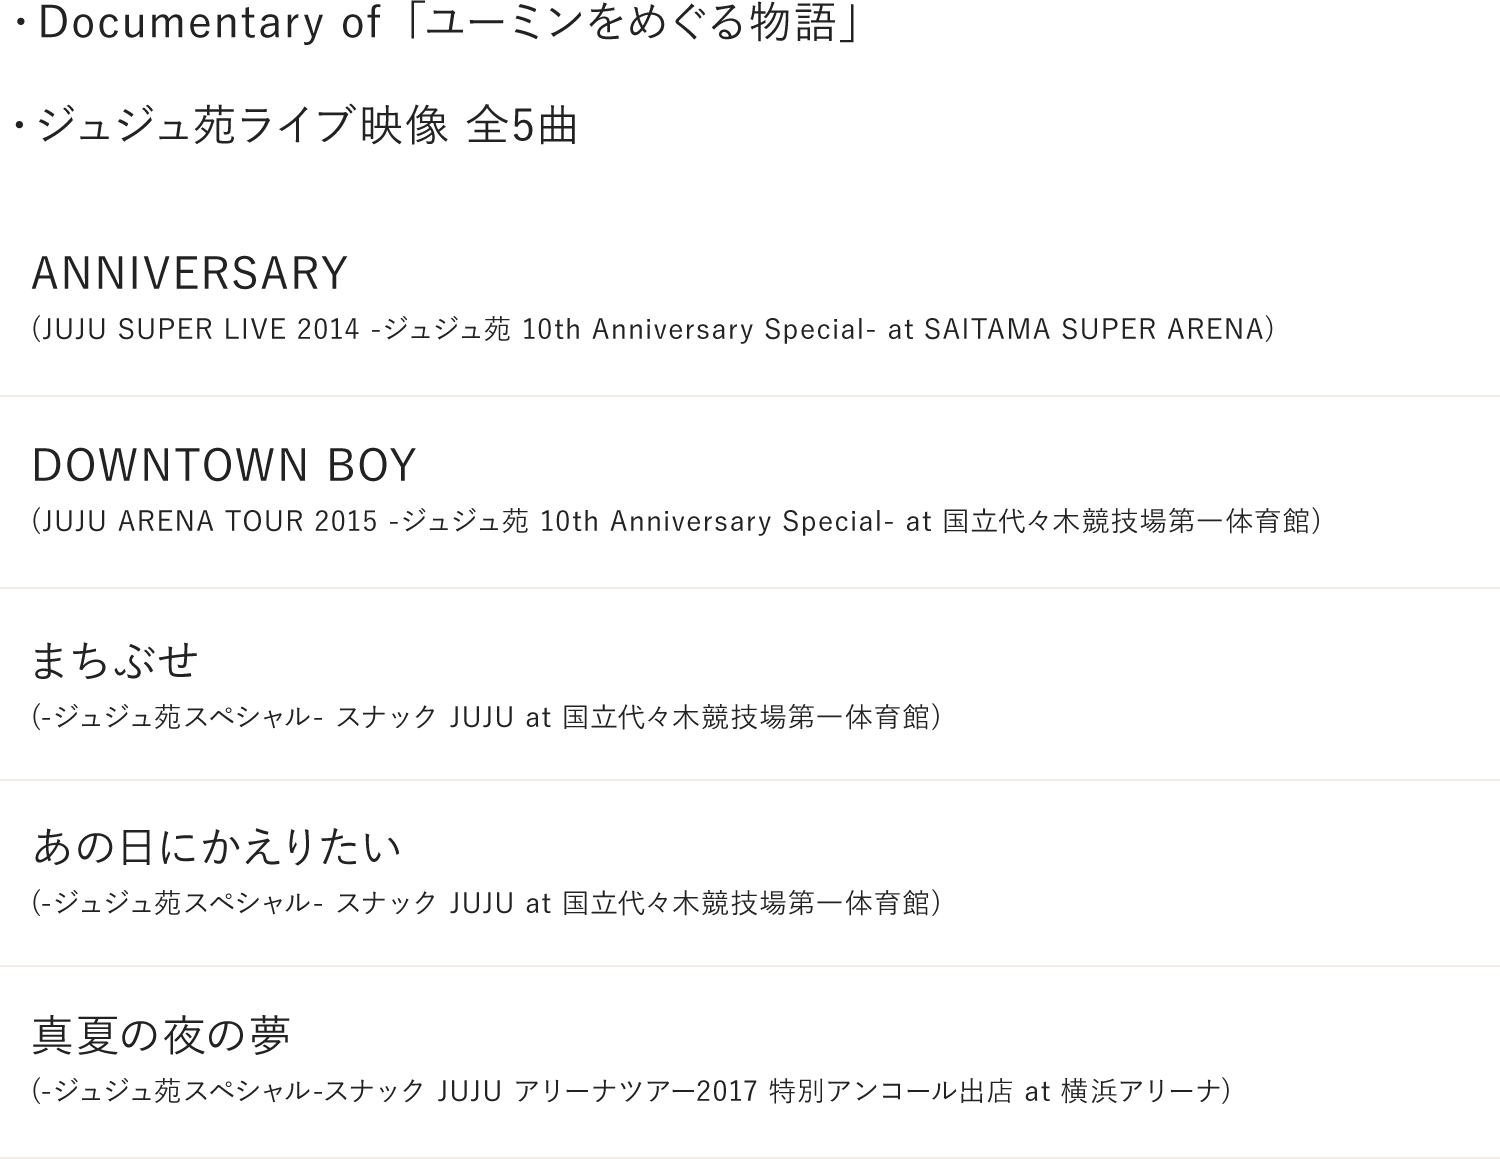 ・Documentary of ユーミンをめぐる物語・ジュジュ苑 LIVE映像 (全5曲)「ANNIVERSARY」(JUJU SUPER LIVE 2014 -ジュジュ苑 10th Anniversary Special- at SAITAMA SUPER ARENA)「DOWNTOWN BOY」(JUJU ARENA TOUR 2015 -ジュジュ苑 10th Anniversary Special- at 国立代々木競技場第一体育館)「まちぶせ」(-ジュジュ苑スペシャル- スナックJUJU at 国立代々木競技場第一体育館)「あの日にかえりたい」(-ジュジュ苑スペシャル- スナックJUJU at 国立代々木競技場第一体育館)「真夏の夜の夢」(-ジュジュ苑スペシャル-スナックJUJU アリーナツアー2017 特別アンコール出店 at 横浜アリーナ)